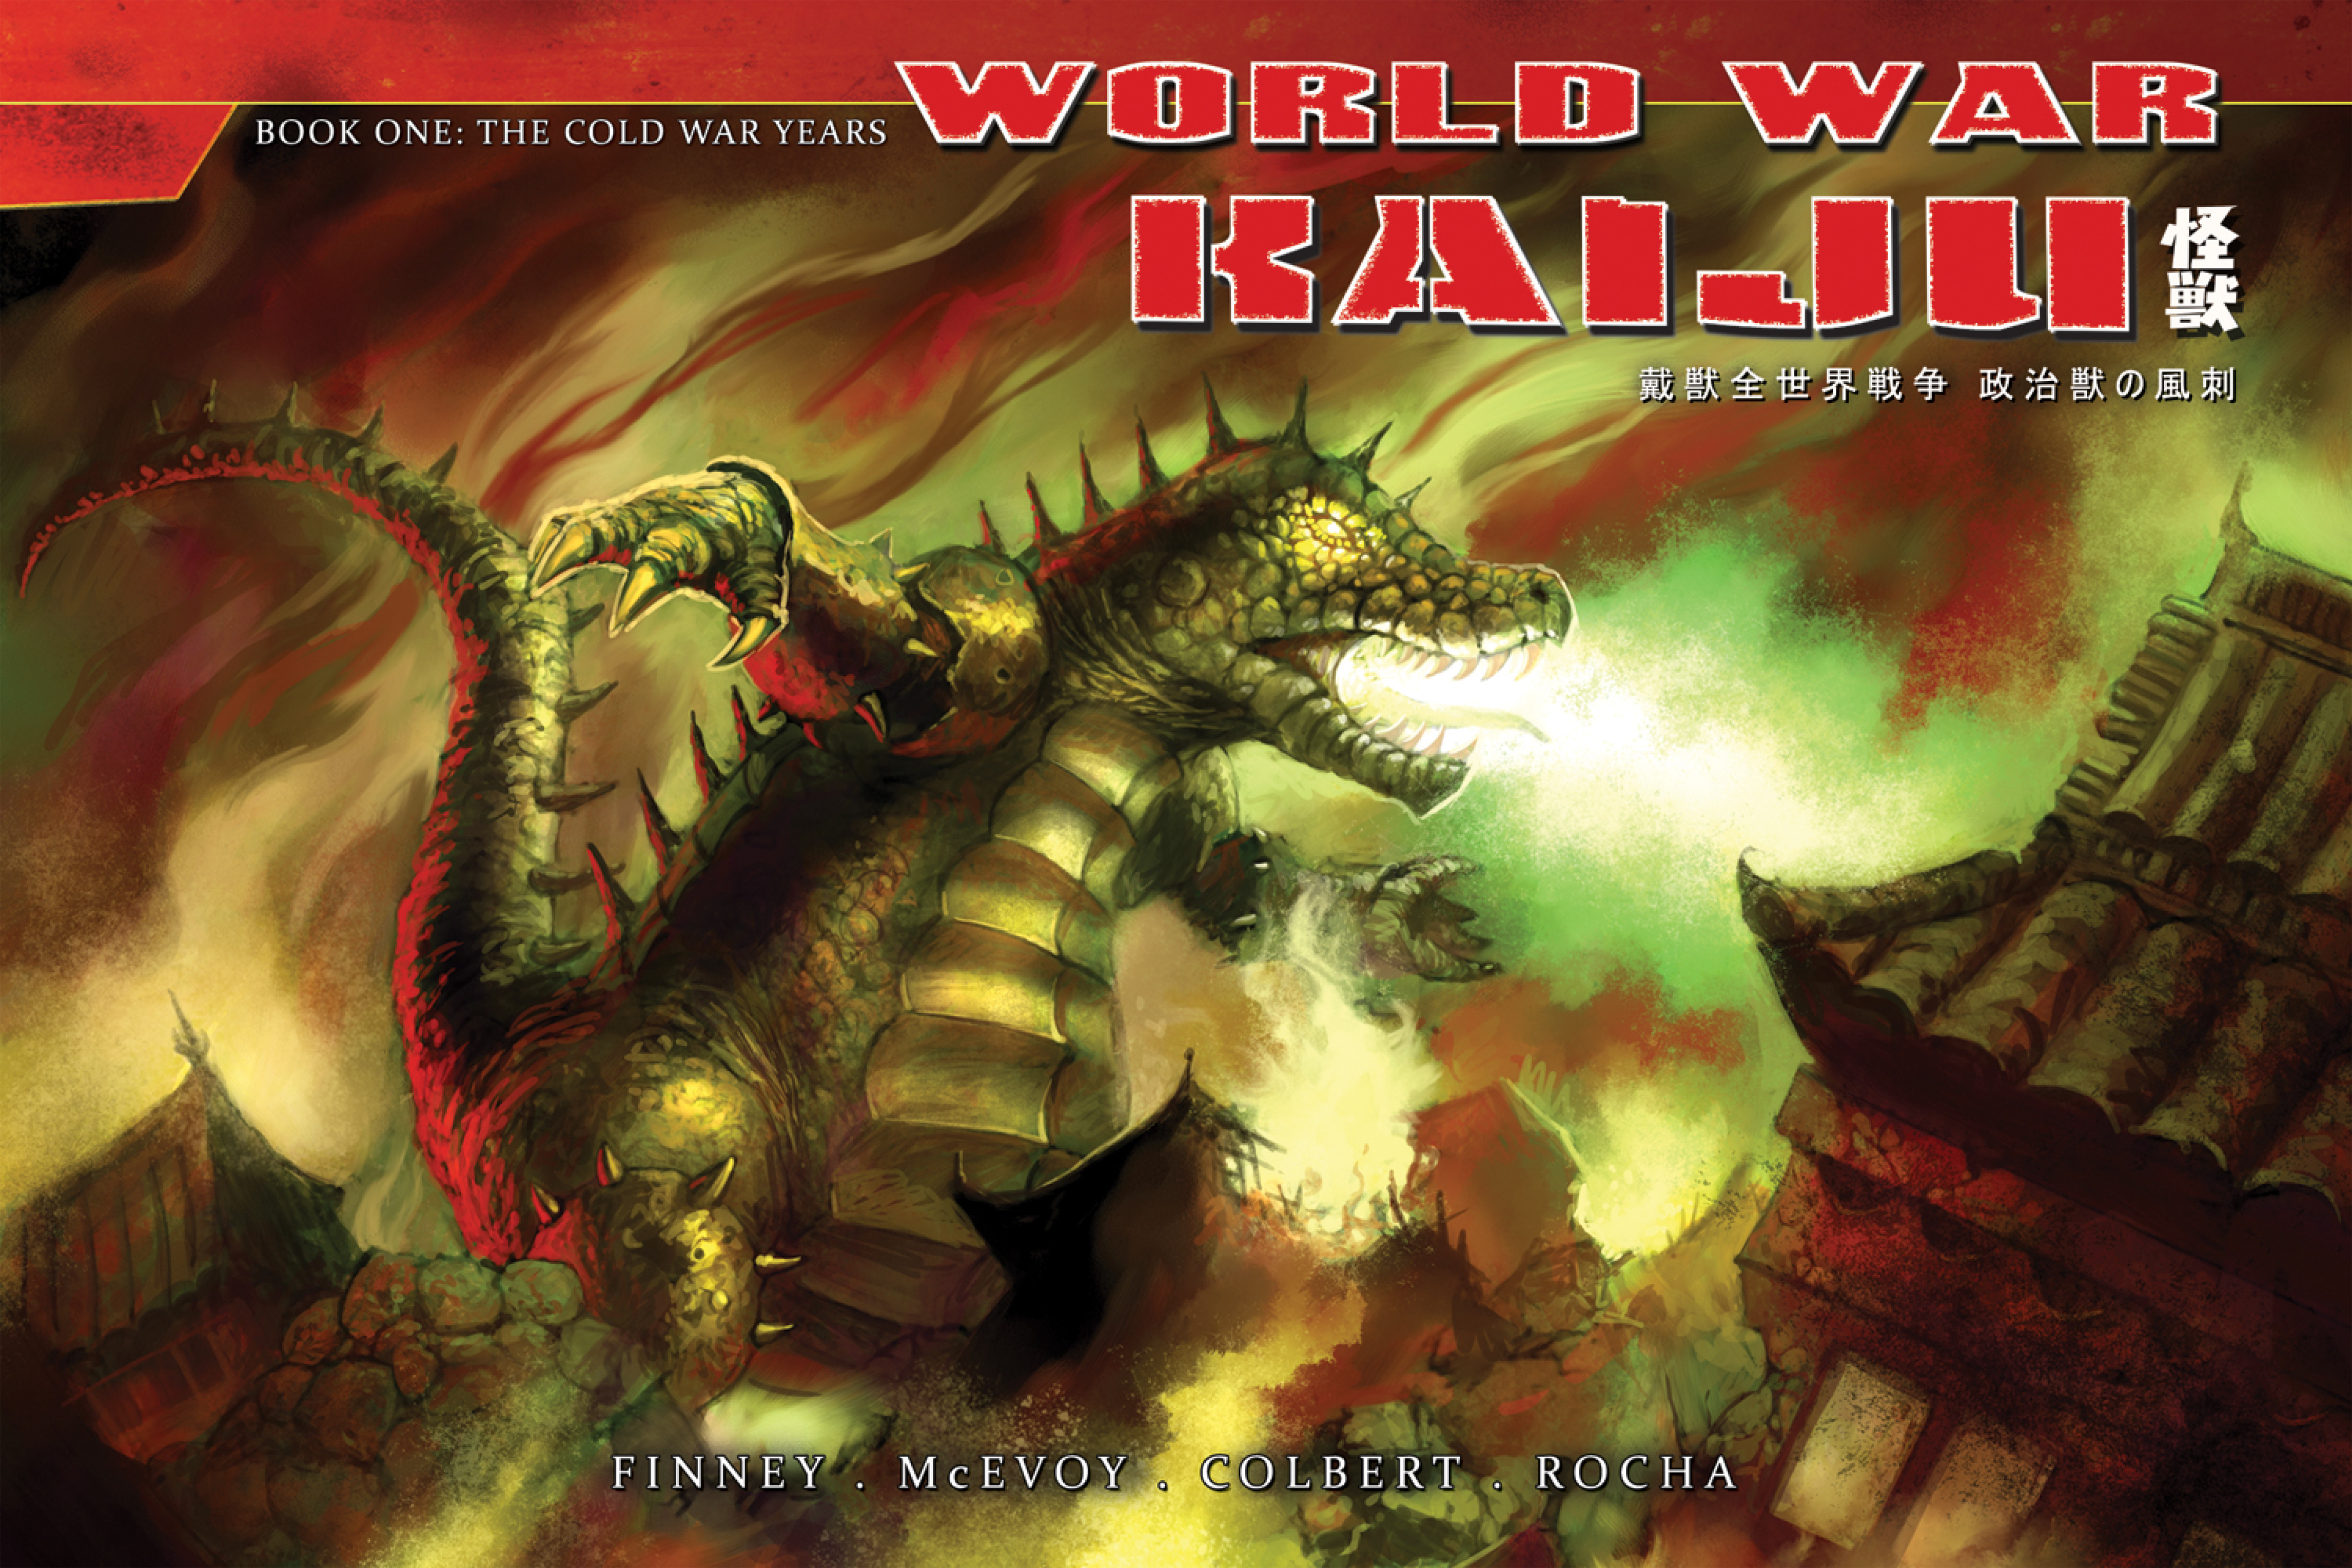 Read online World War Kaiju comic -  Issue # TPB - 1